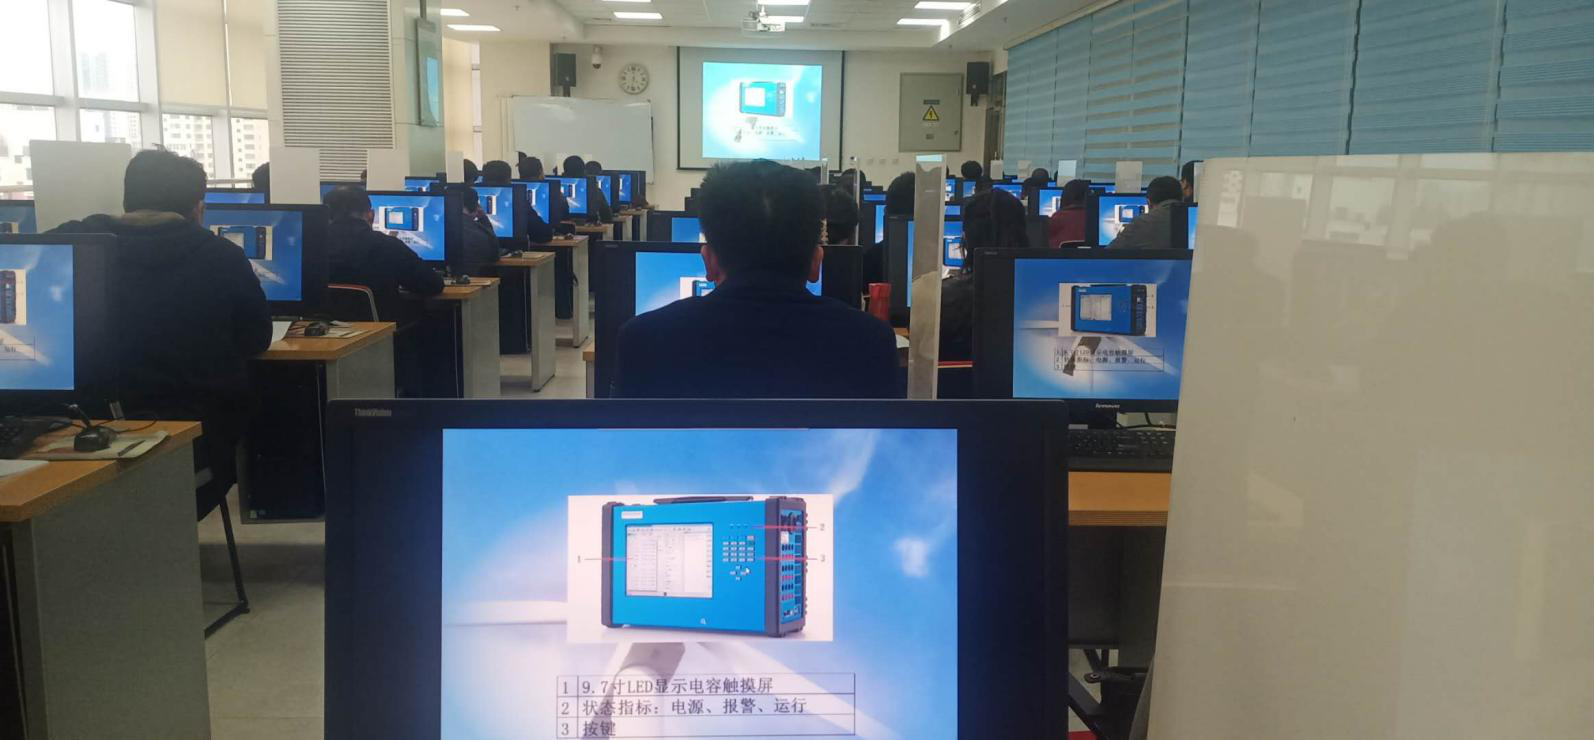 Szkolenie KF86 odbyło się z powodzeniem w prowincji Gansu   